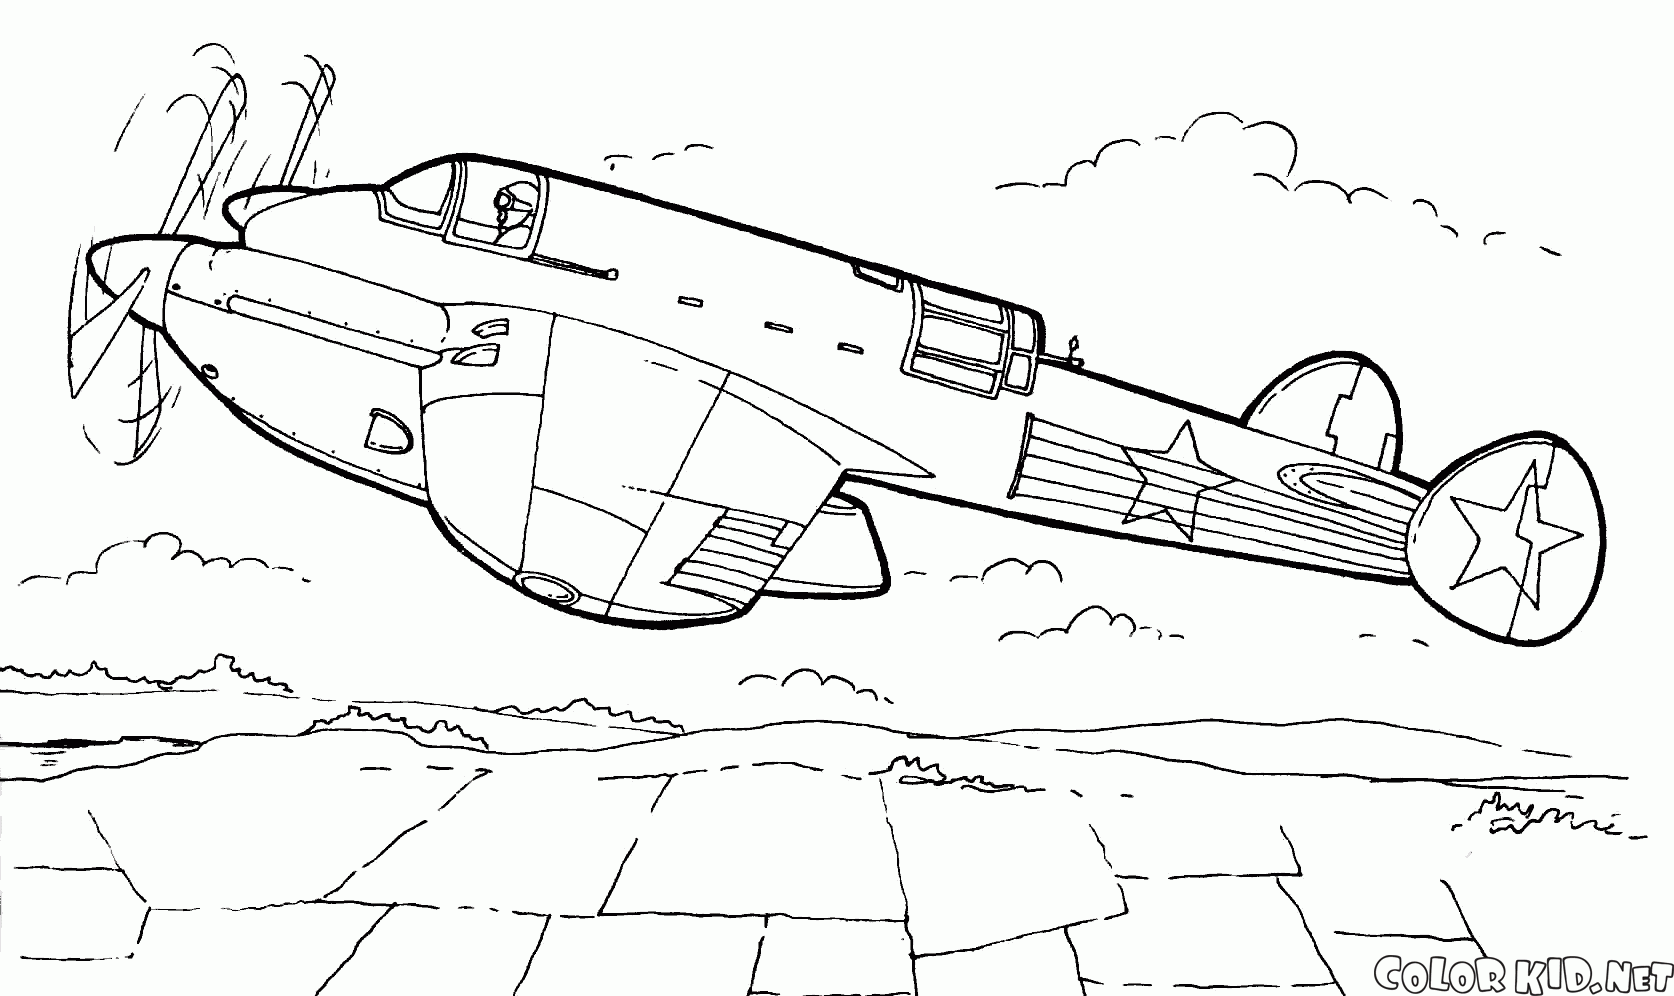 R-12 aviões de reconhecimento de alta velocidade